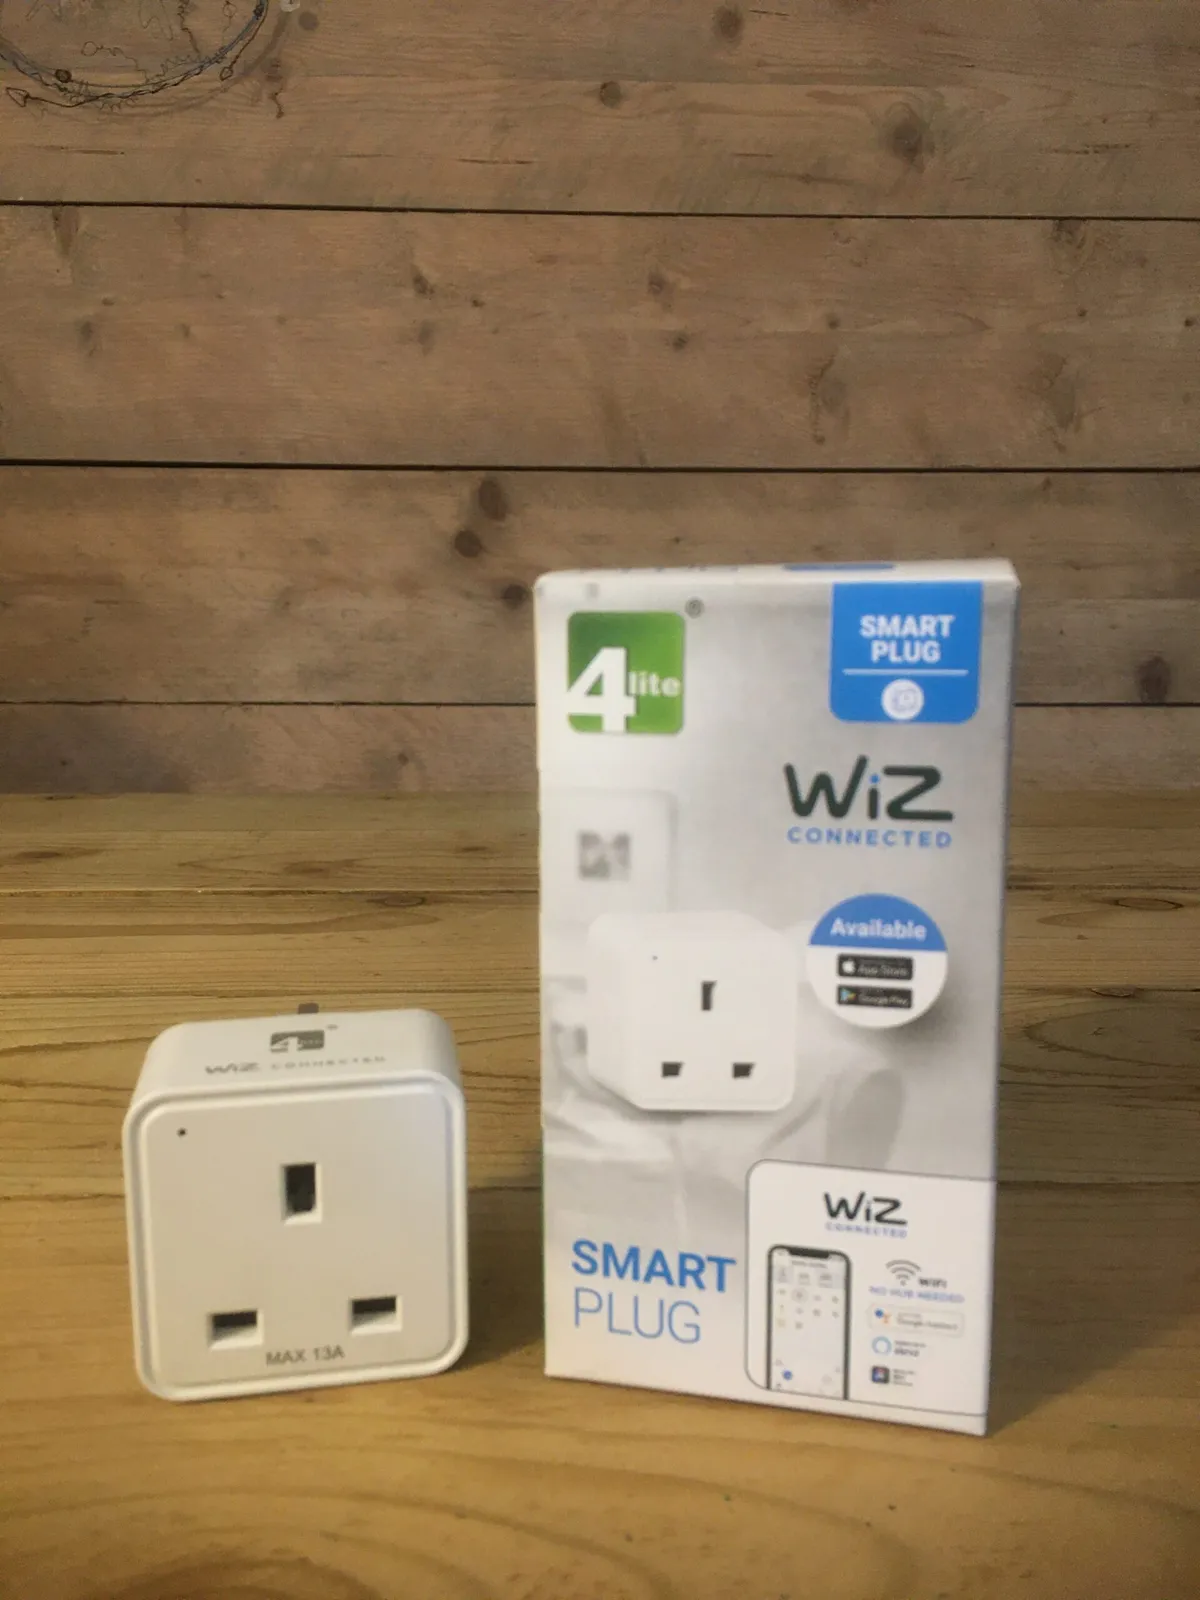 4Lite smart plug